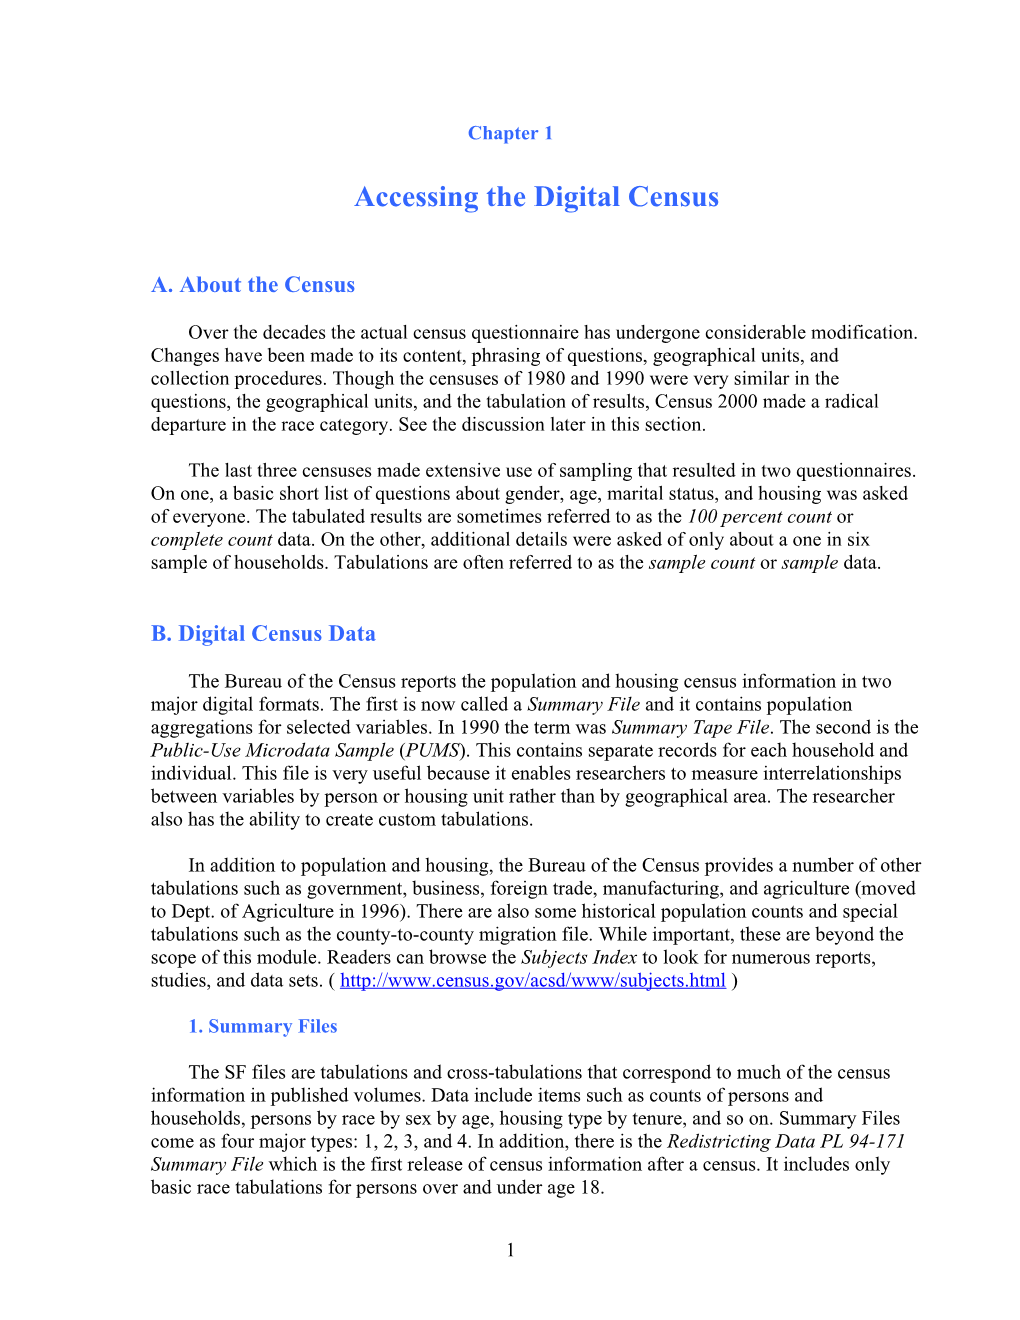 Accessing the Digital Census